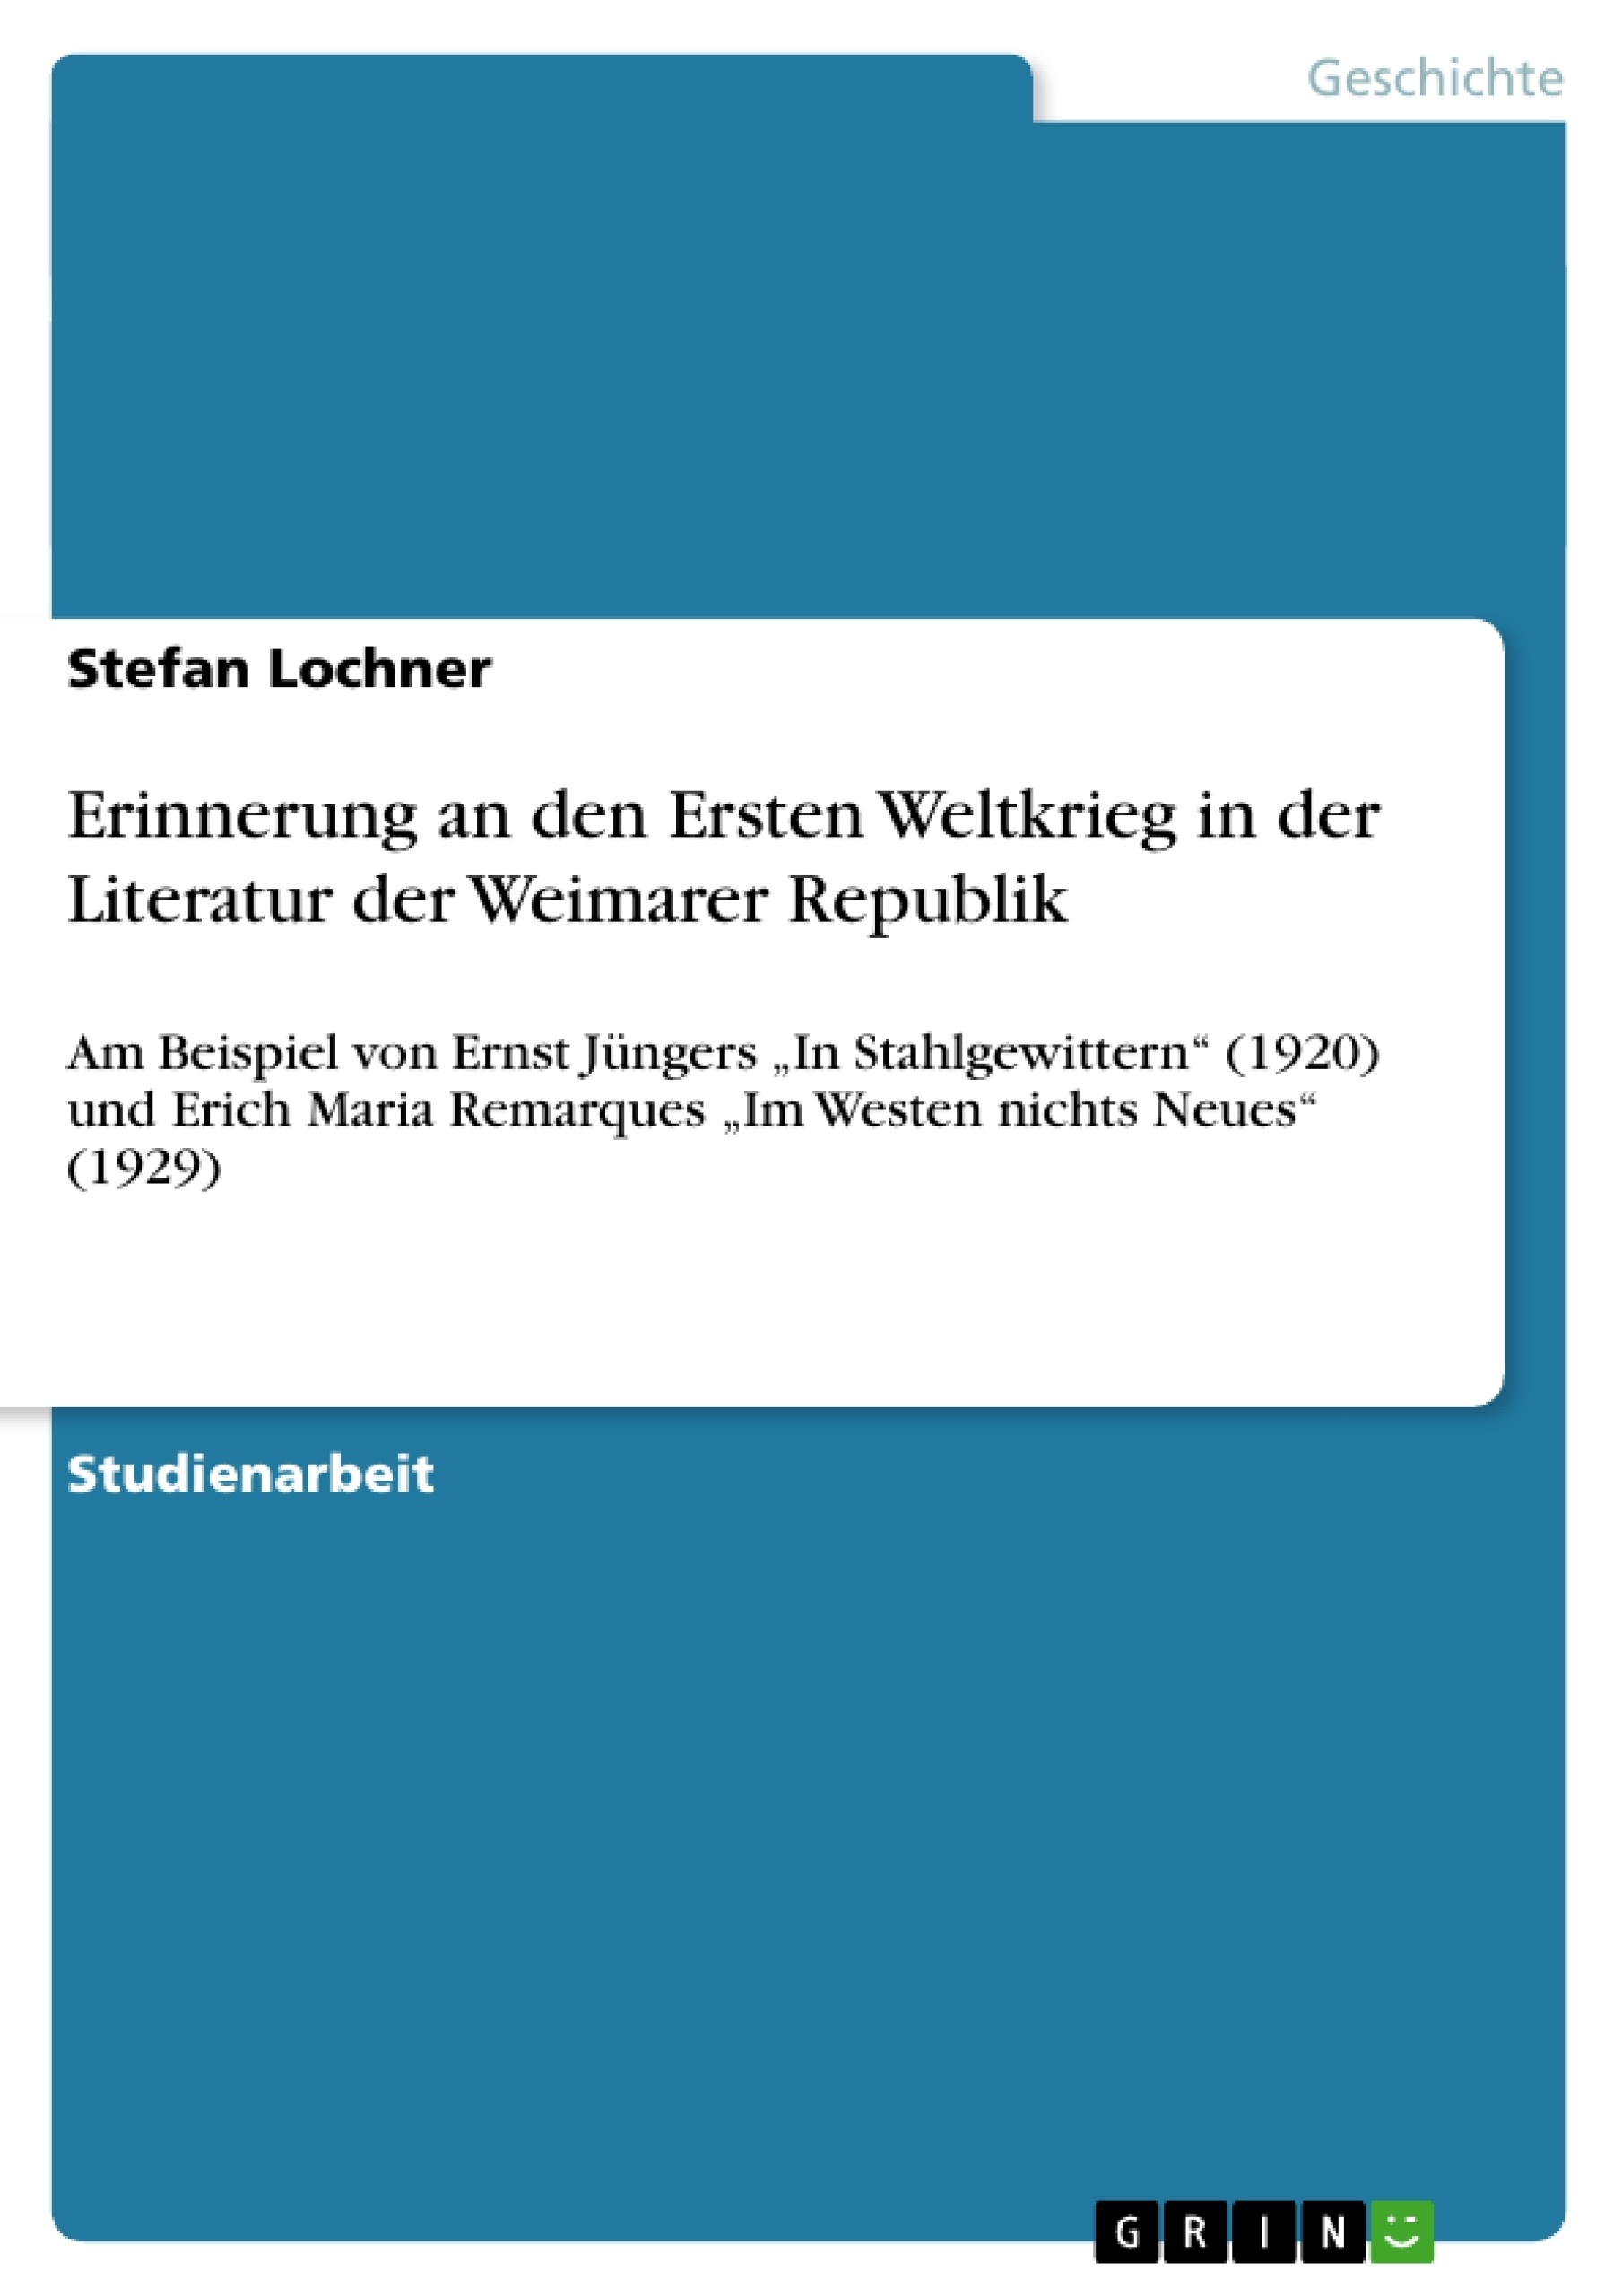 Título: Erinnerung an den Ersten Weltkrieg in der Literatur der Weimarer Republik